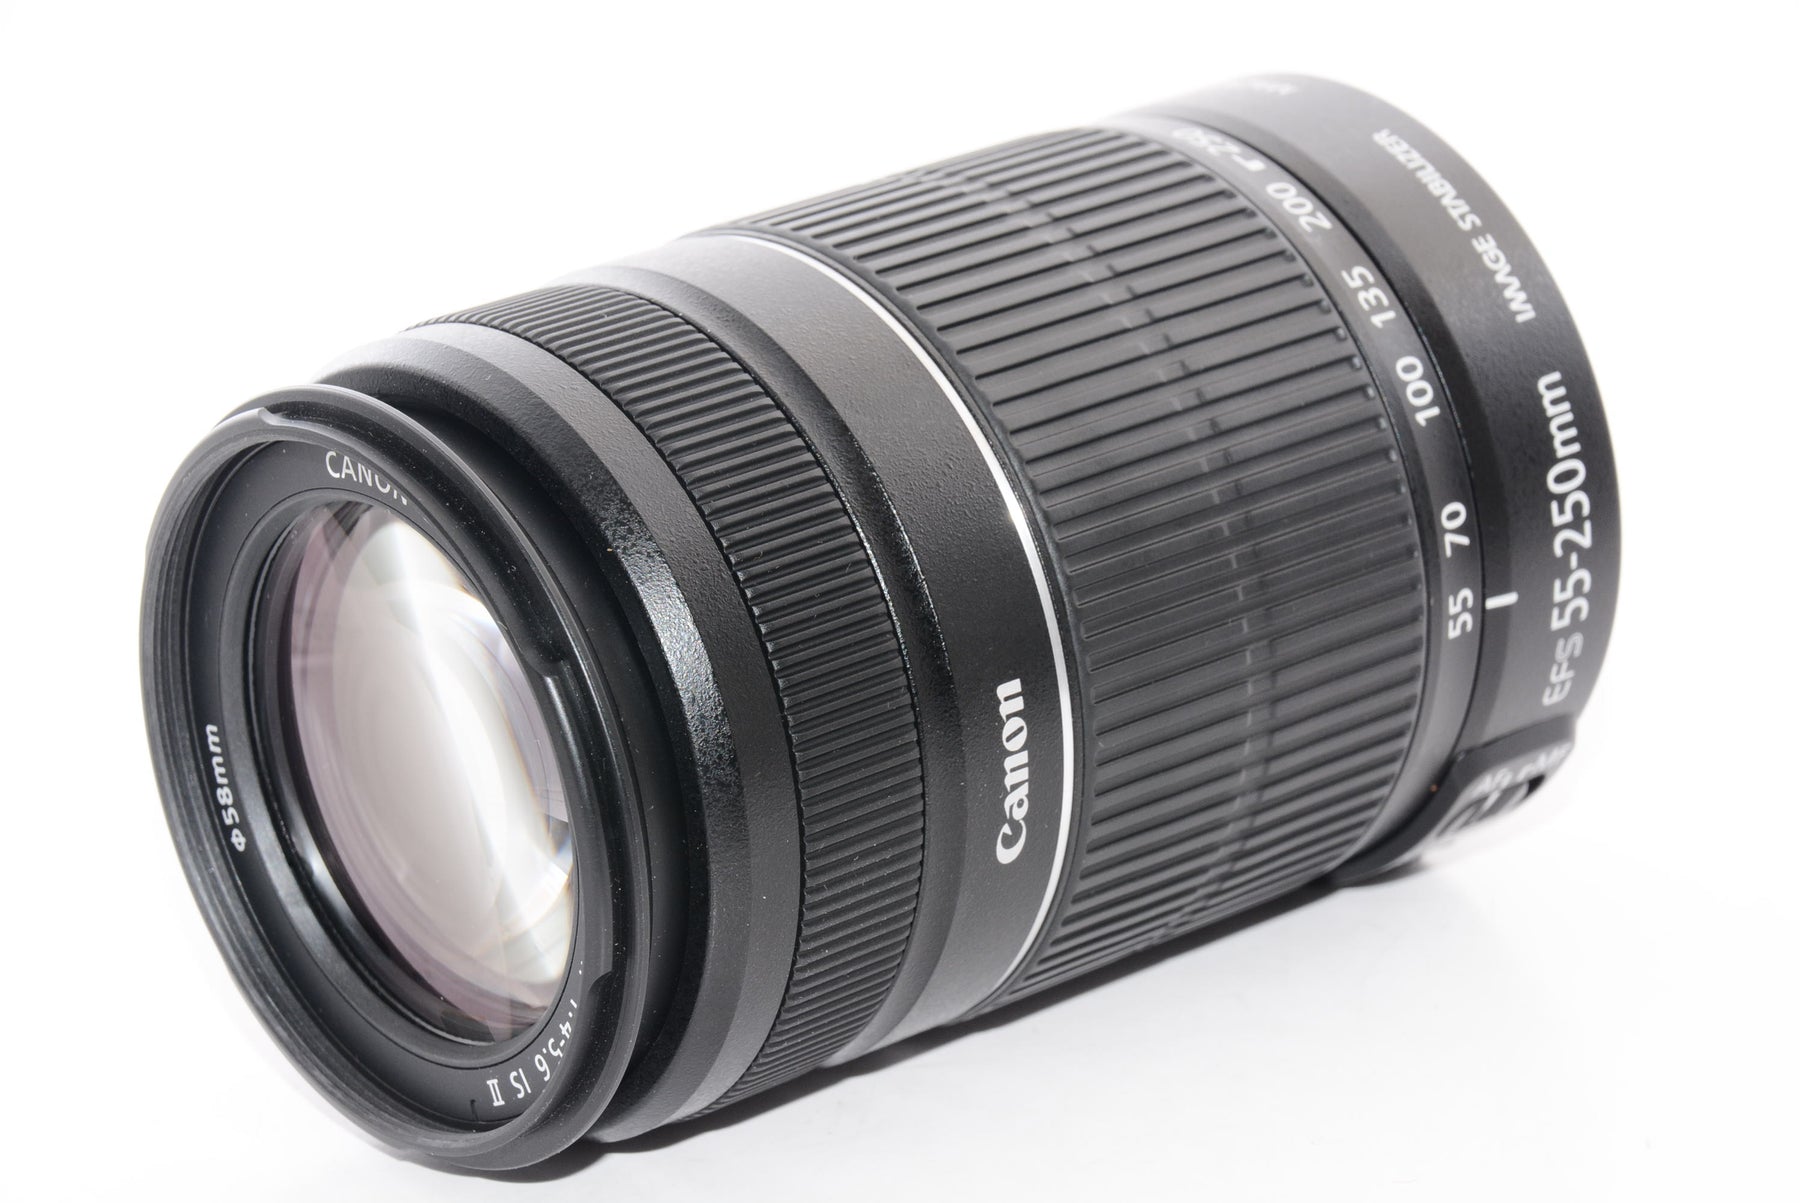 Canon EF-S 55-250mm IS Ⅱ 望遠レンズ - レンズ(ズーム)